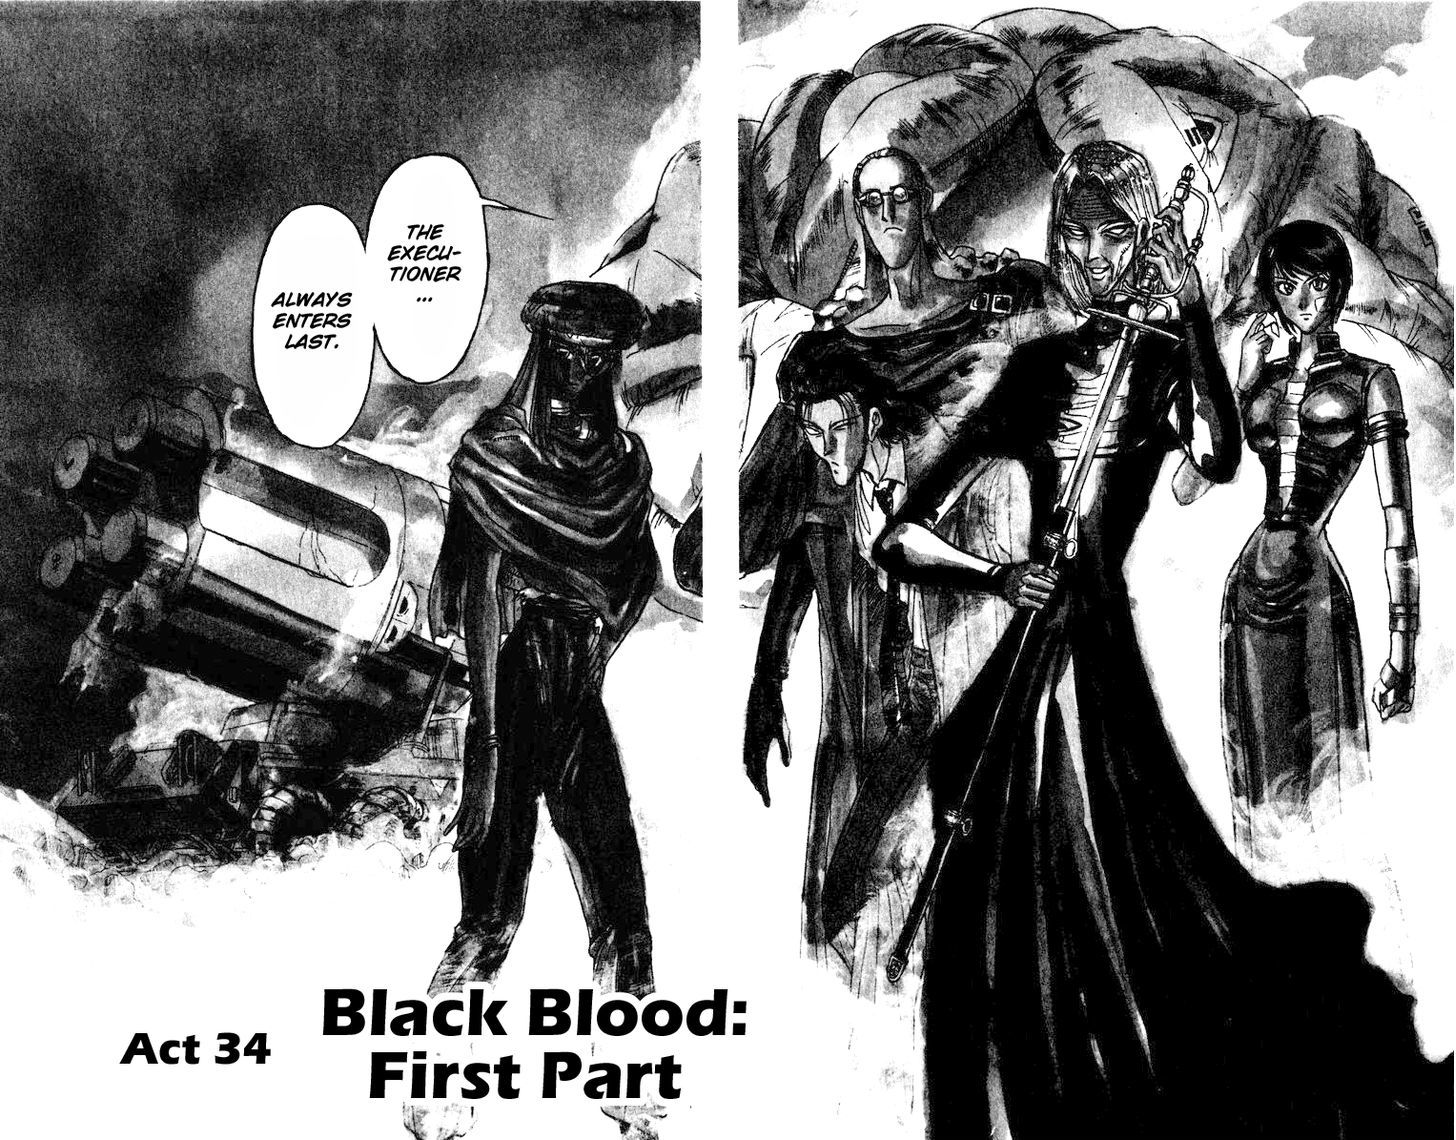 Karakuri Circus Chapter 190 : Karakuriã€Œfinal Actâ€”Act 34: Black Blood: First Part - Picture 2